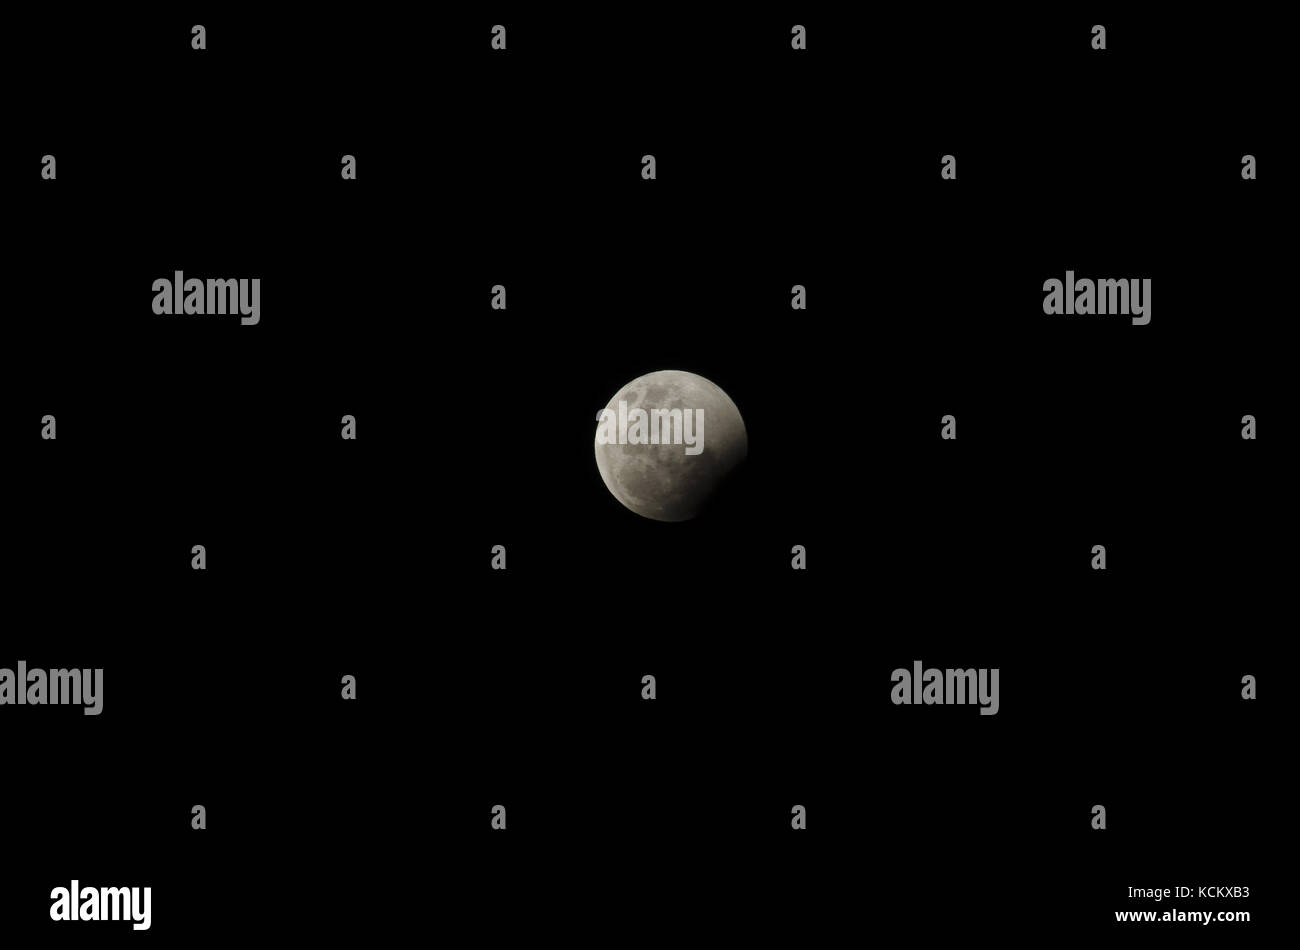 Lunar eclipse, 8 octobre 2014, une des six images de la série. L'éclipse a commencé à 7,15 h, était totale à 8,55 h et s'est terminée à 10,35 h. Il est toujours o Banque D'Images